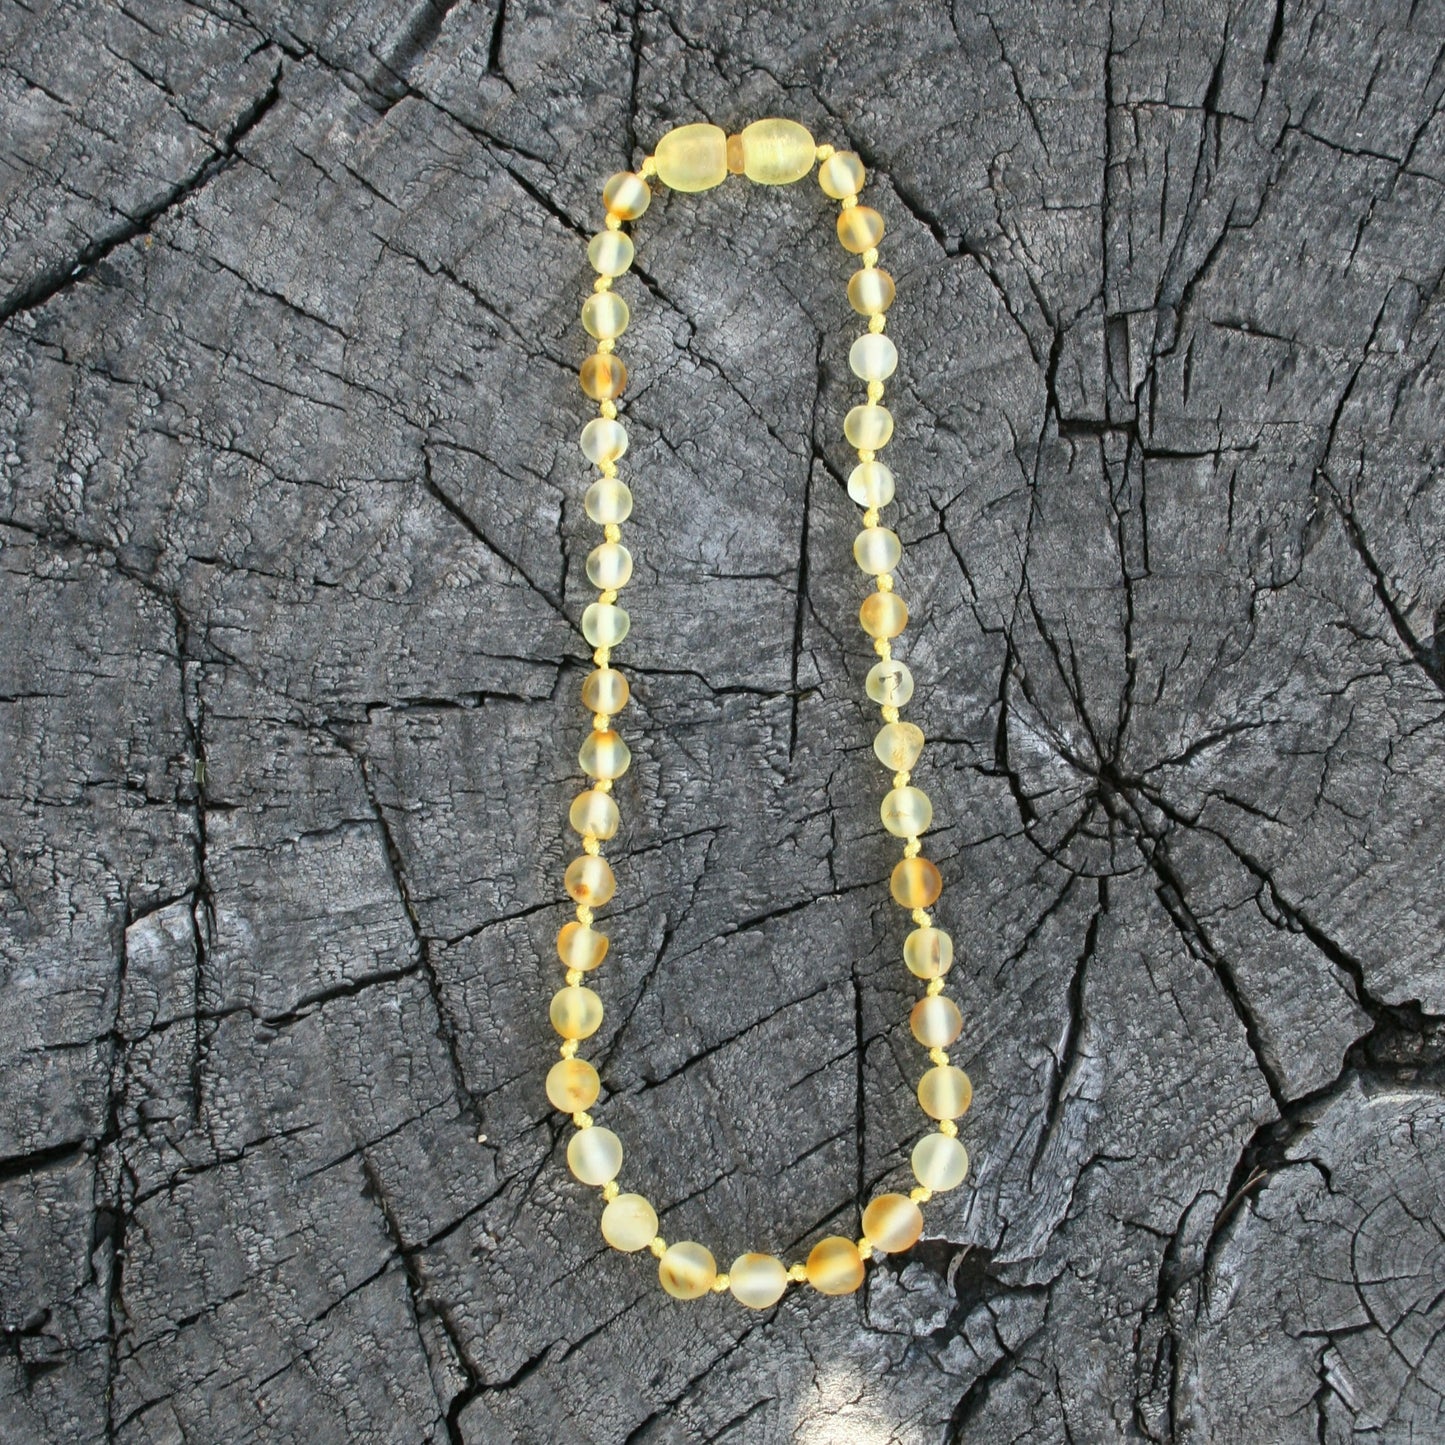 Lemon Round Unpolished Baltic Amber Necklace, Anklet, or Bracelet